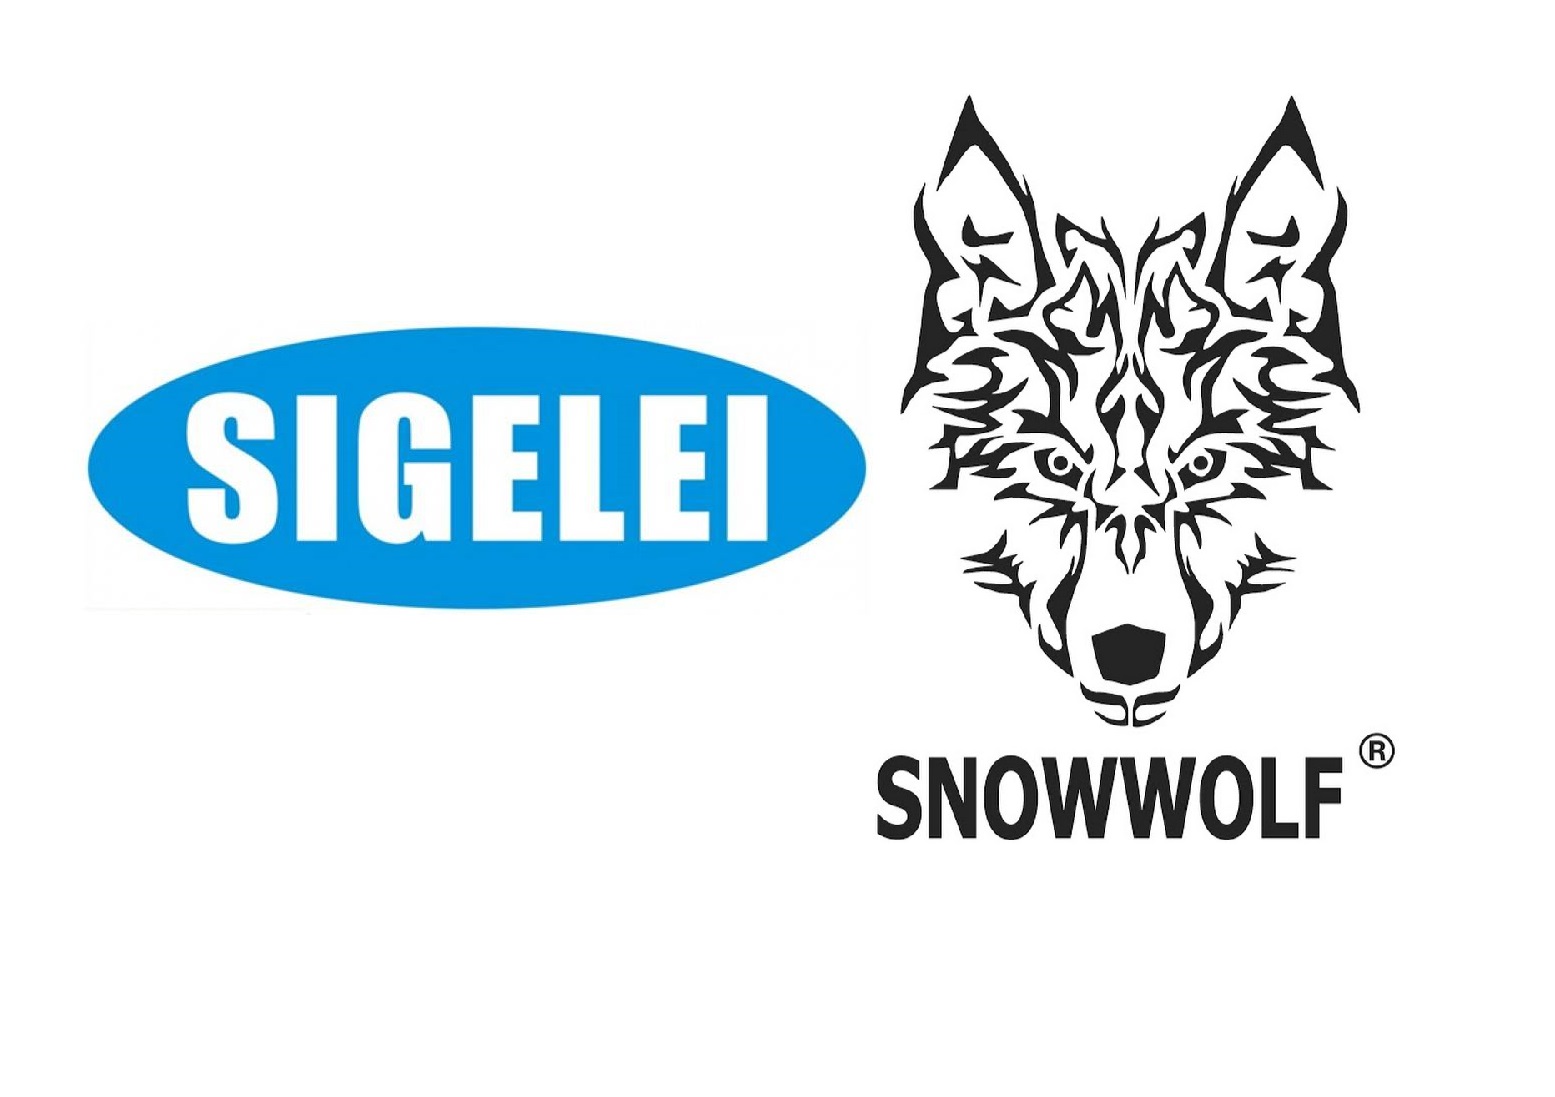 Новые старые предложения - Sigelei 213 FOG kit и Snowwolf Wocket Pod System...